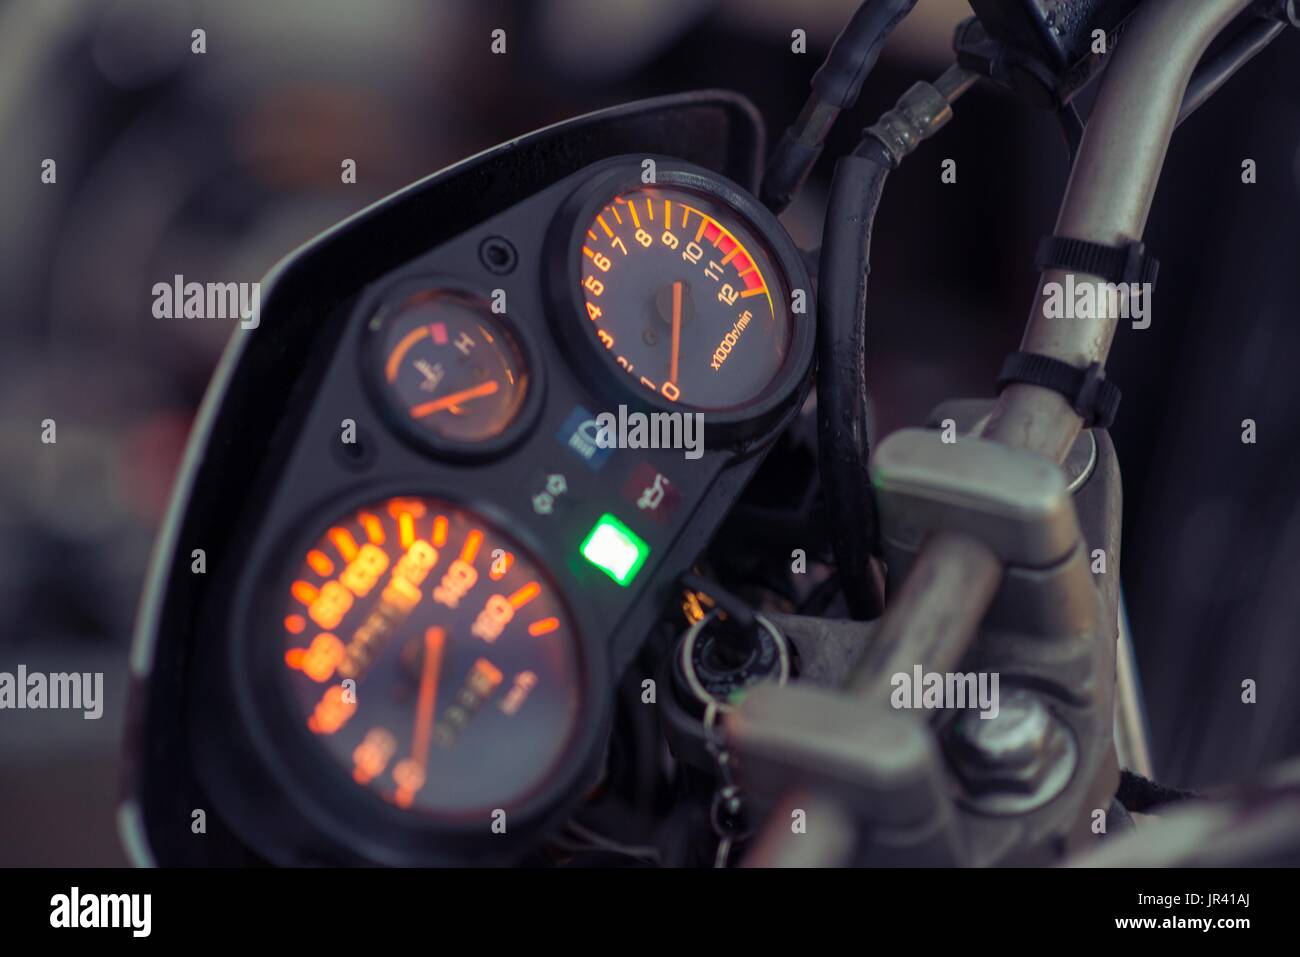 Le panneau lumineux moto avec tachymètre et compteur de tours Banque D'Images